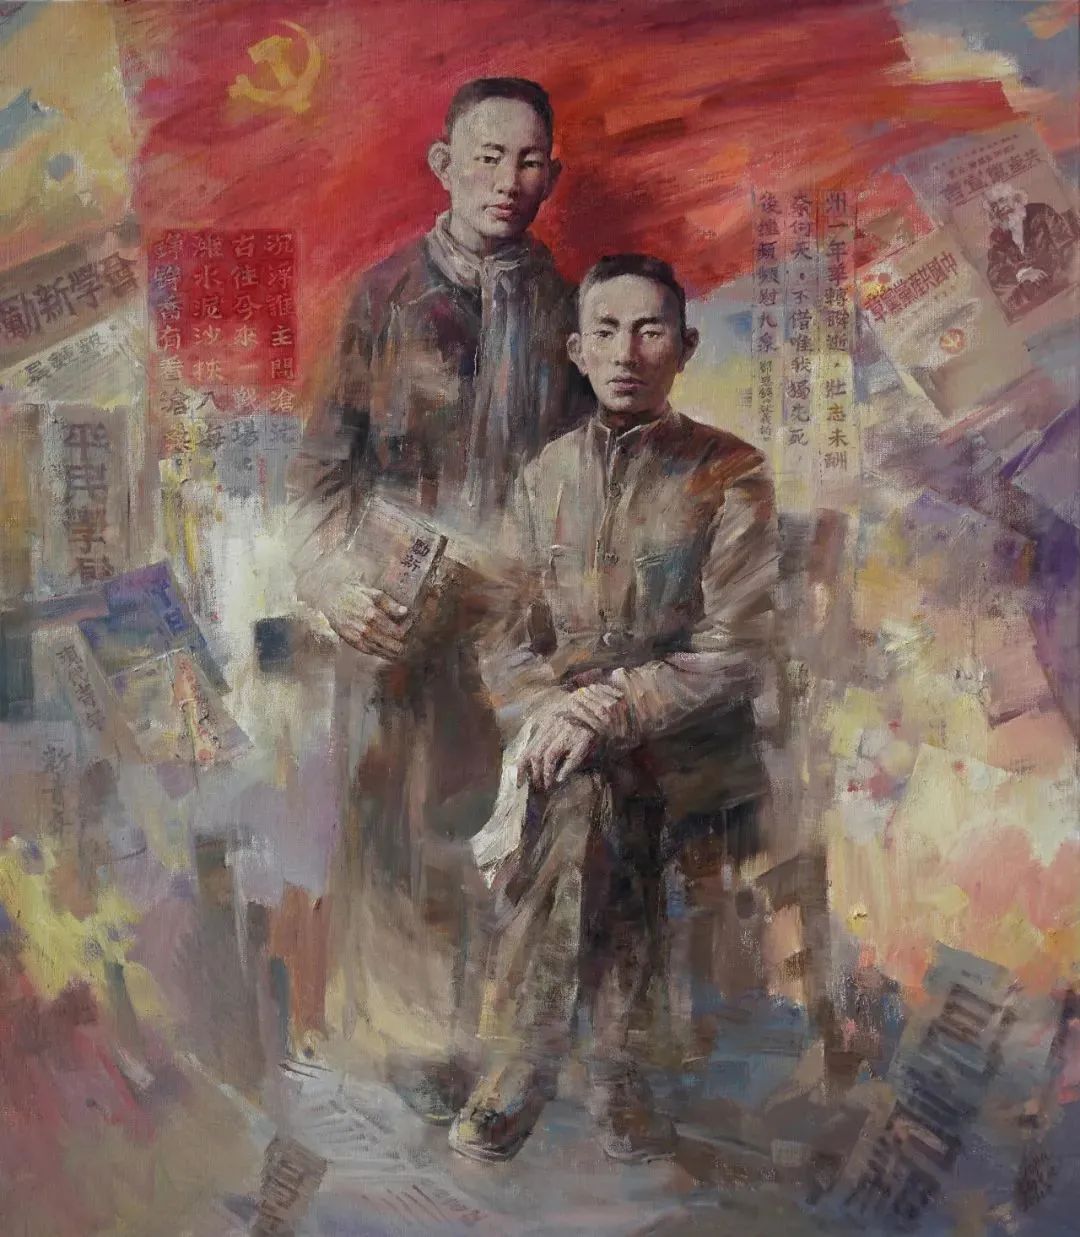 走进“刘青砚艺术作品展”，听画展主人讲述40年艺术求学与创作的历程